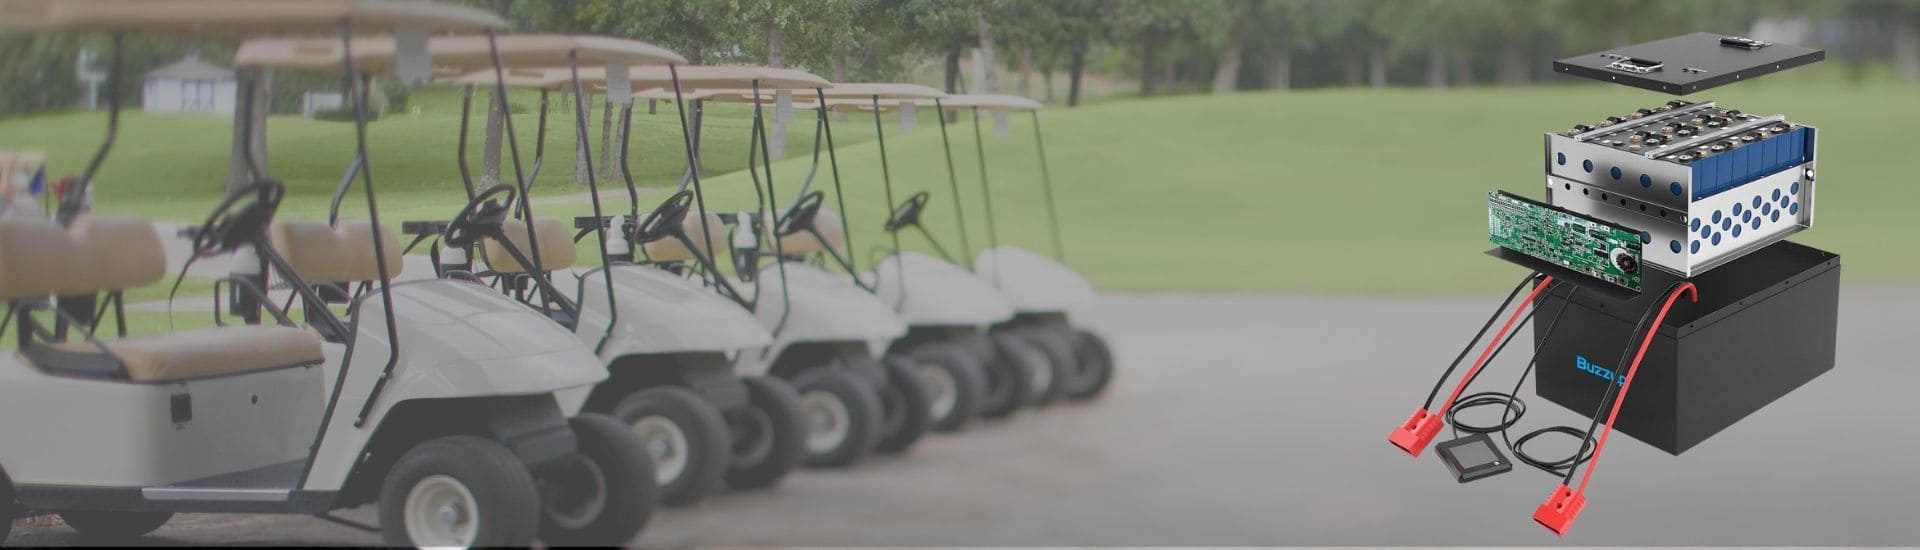 golf cart battery manufacture banner